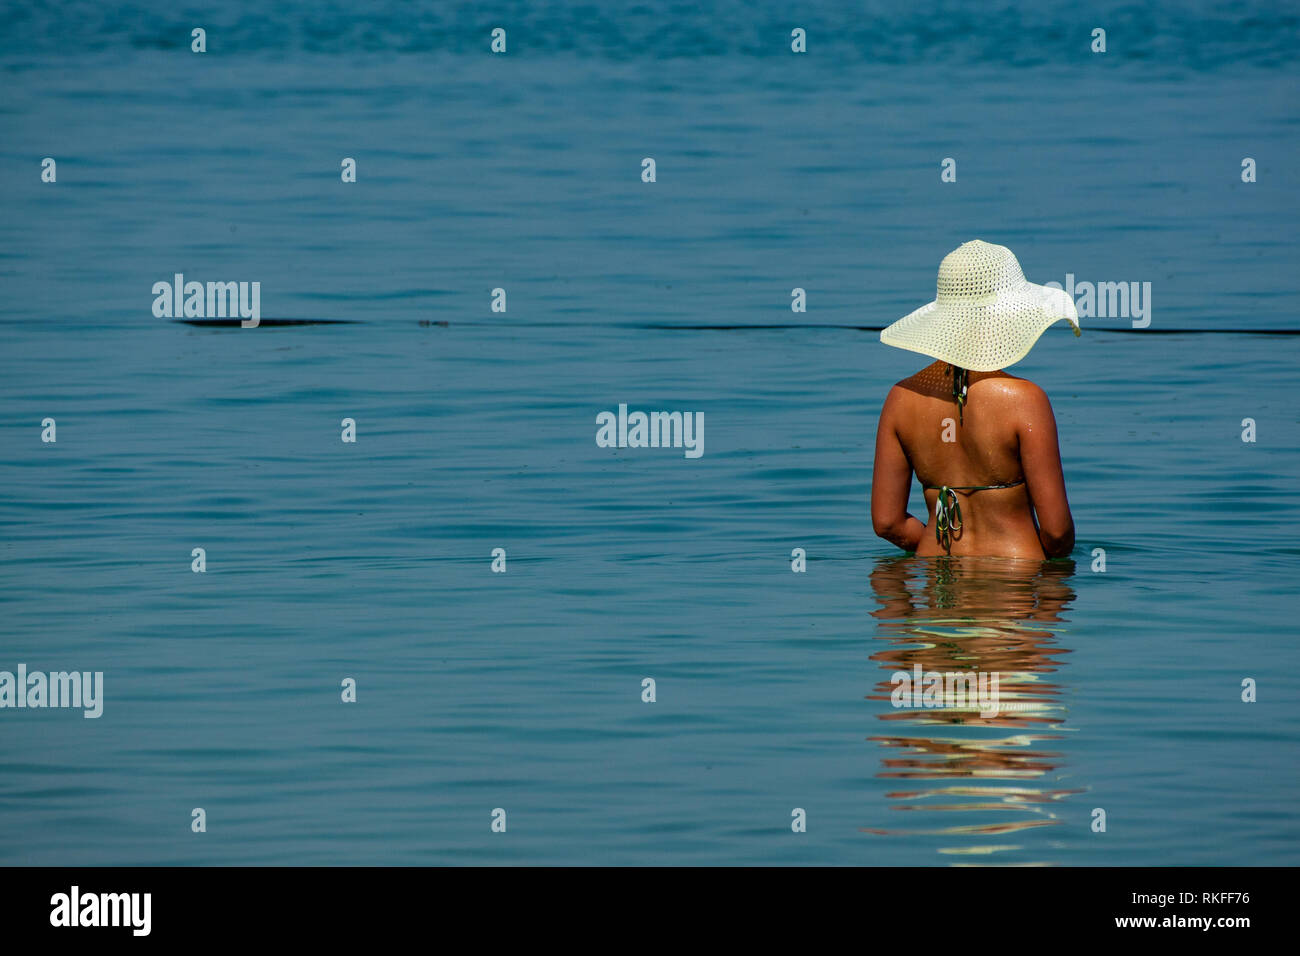 Une femme se baignant dans la mer Morte Banque D'Images